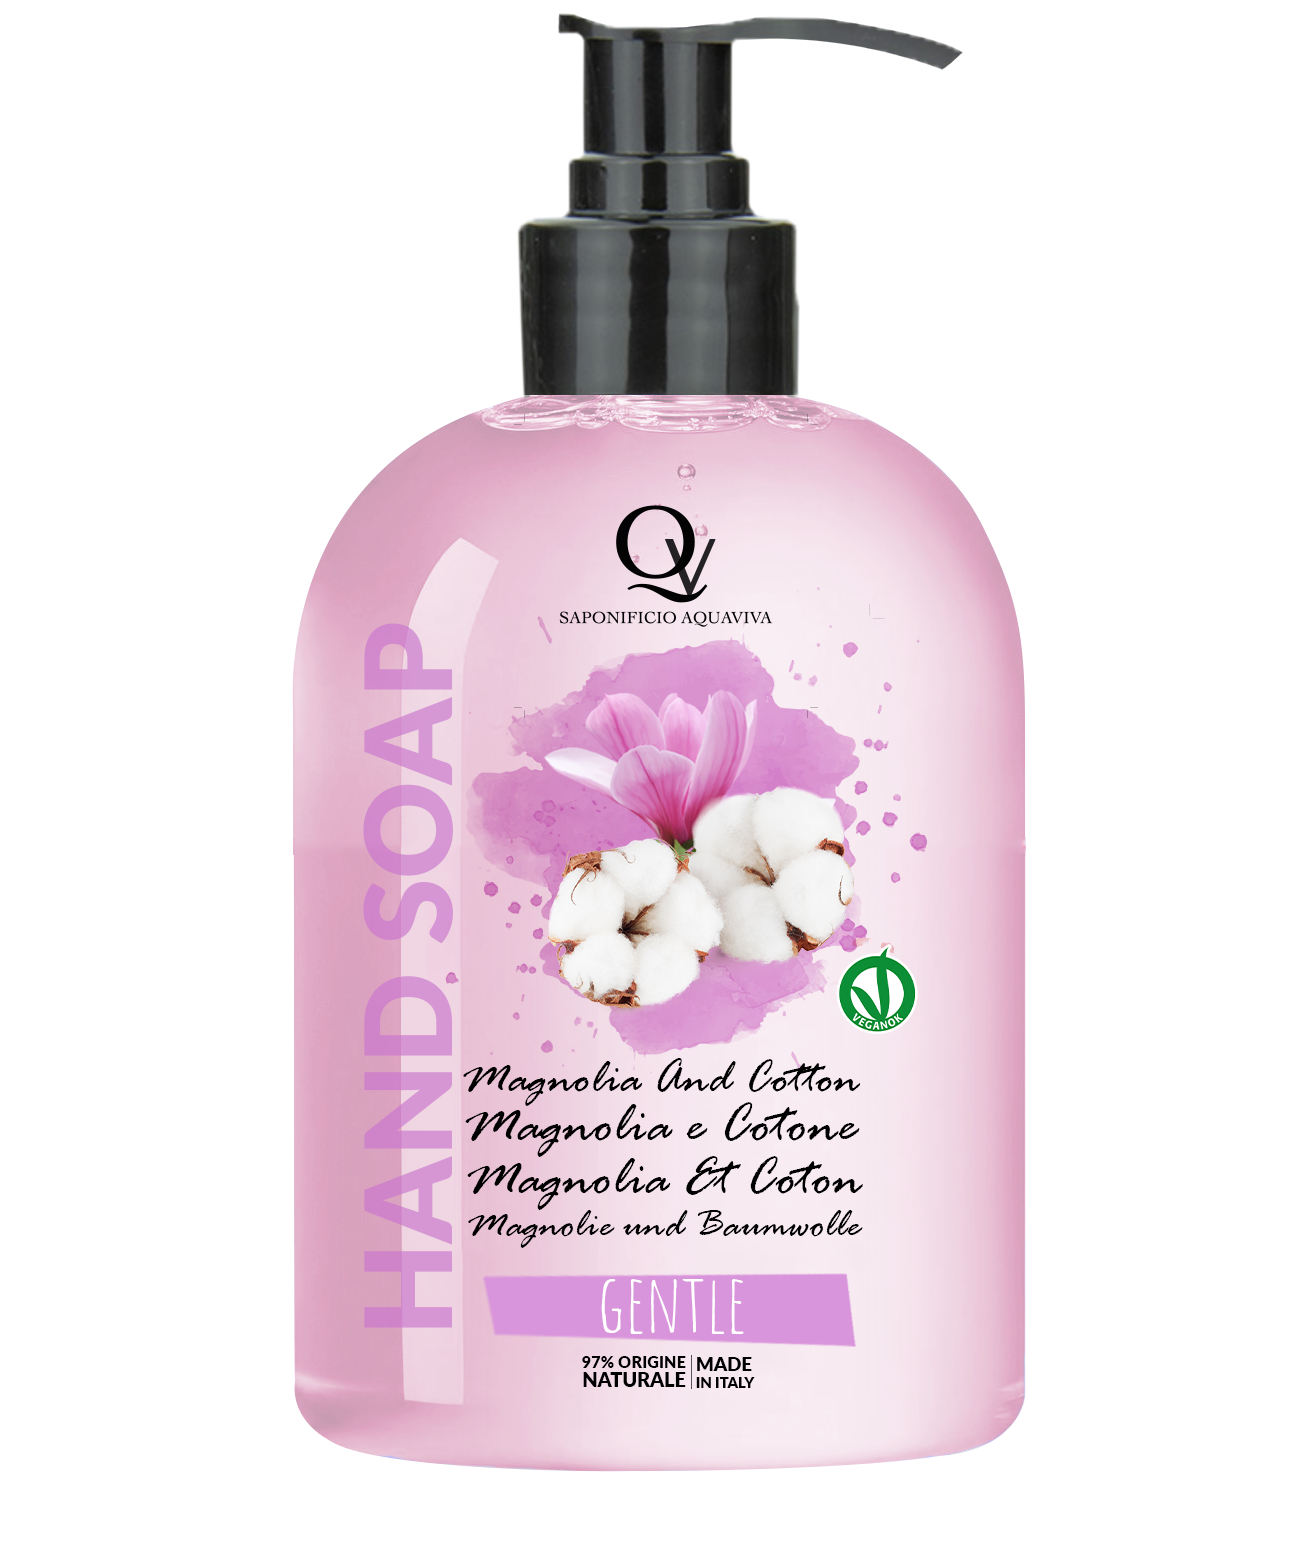 Sapone Mani Gentle alla Magnolia e Cotone 100% Vegan Saponificio Aquaviva